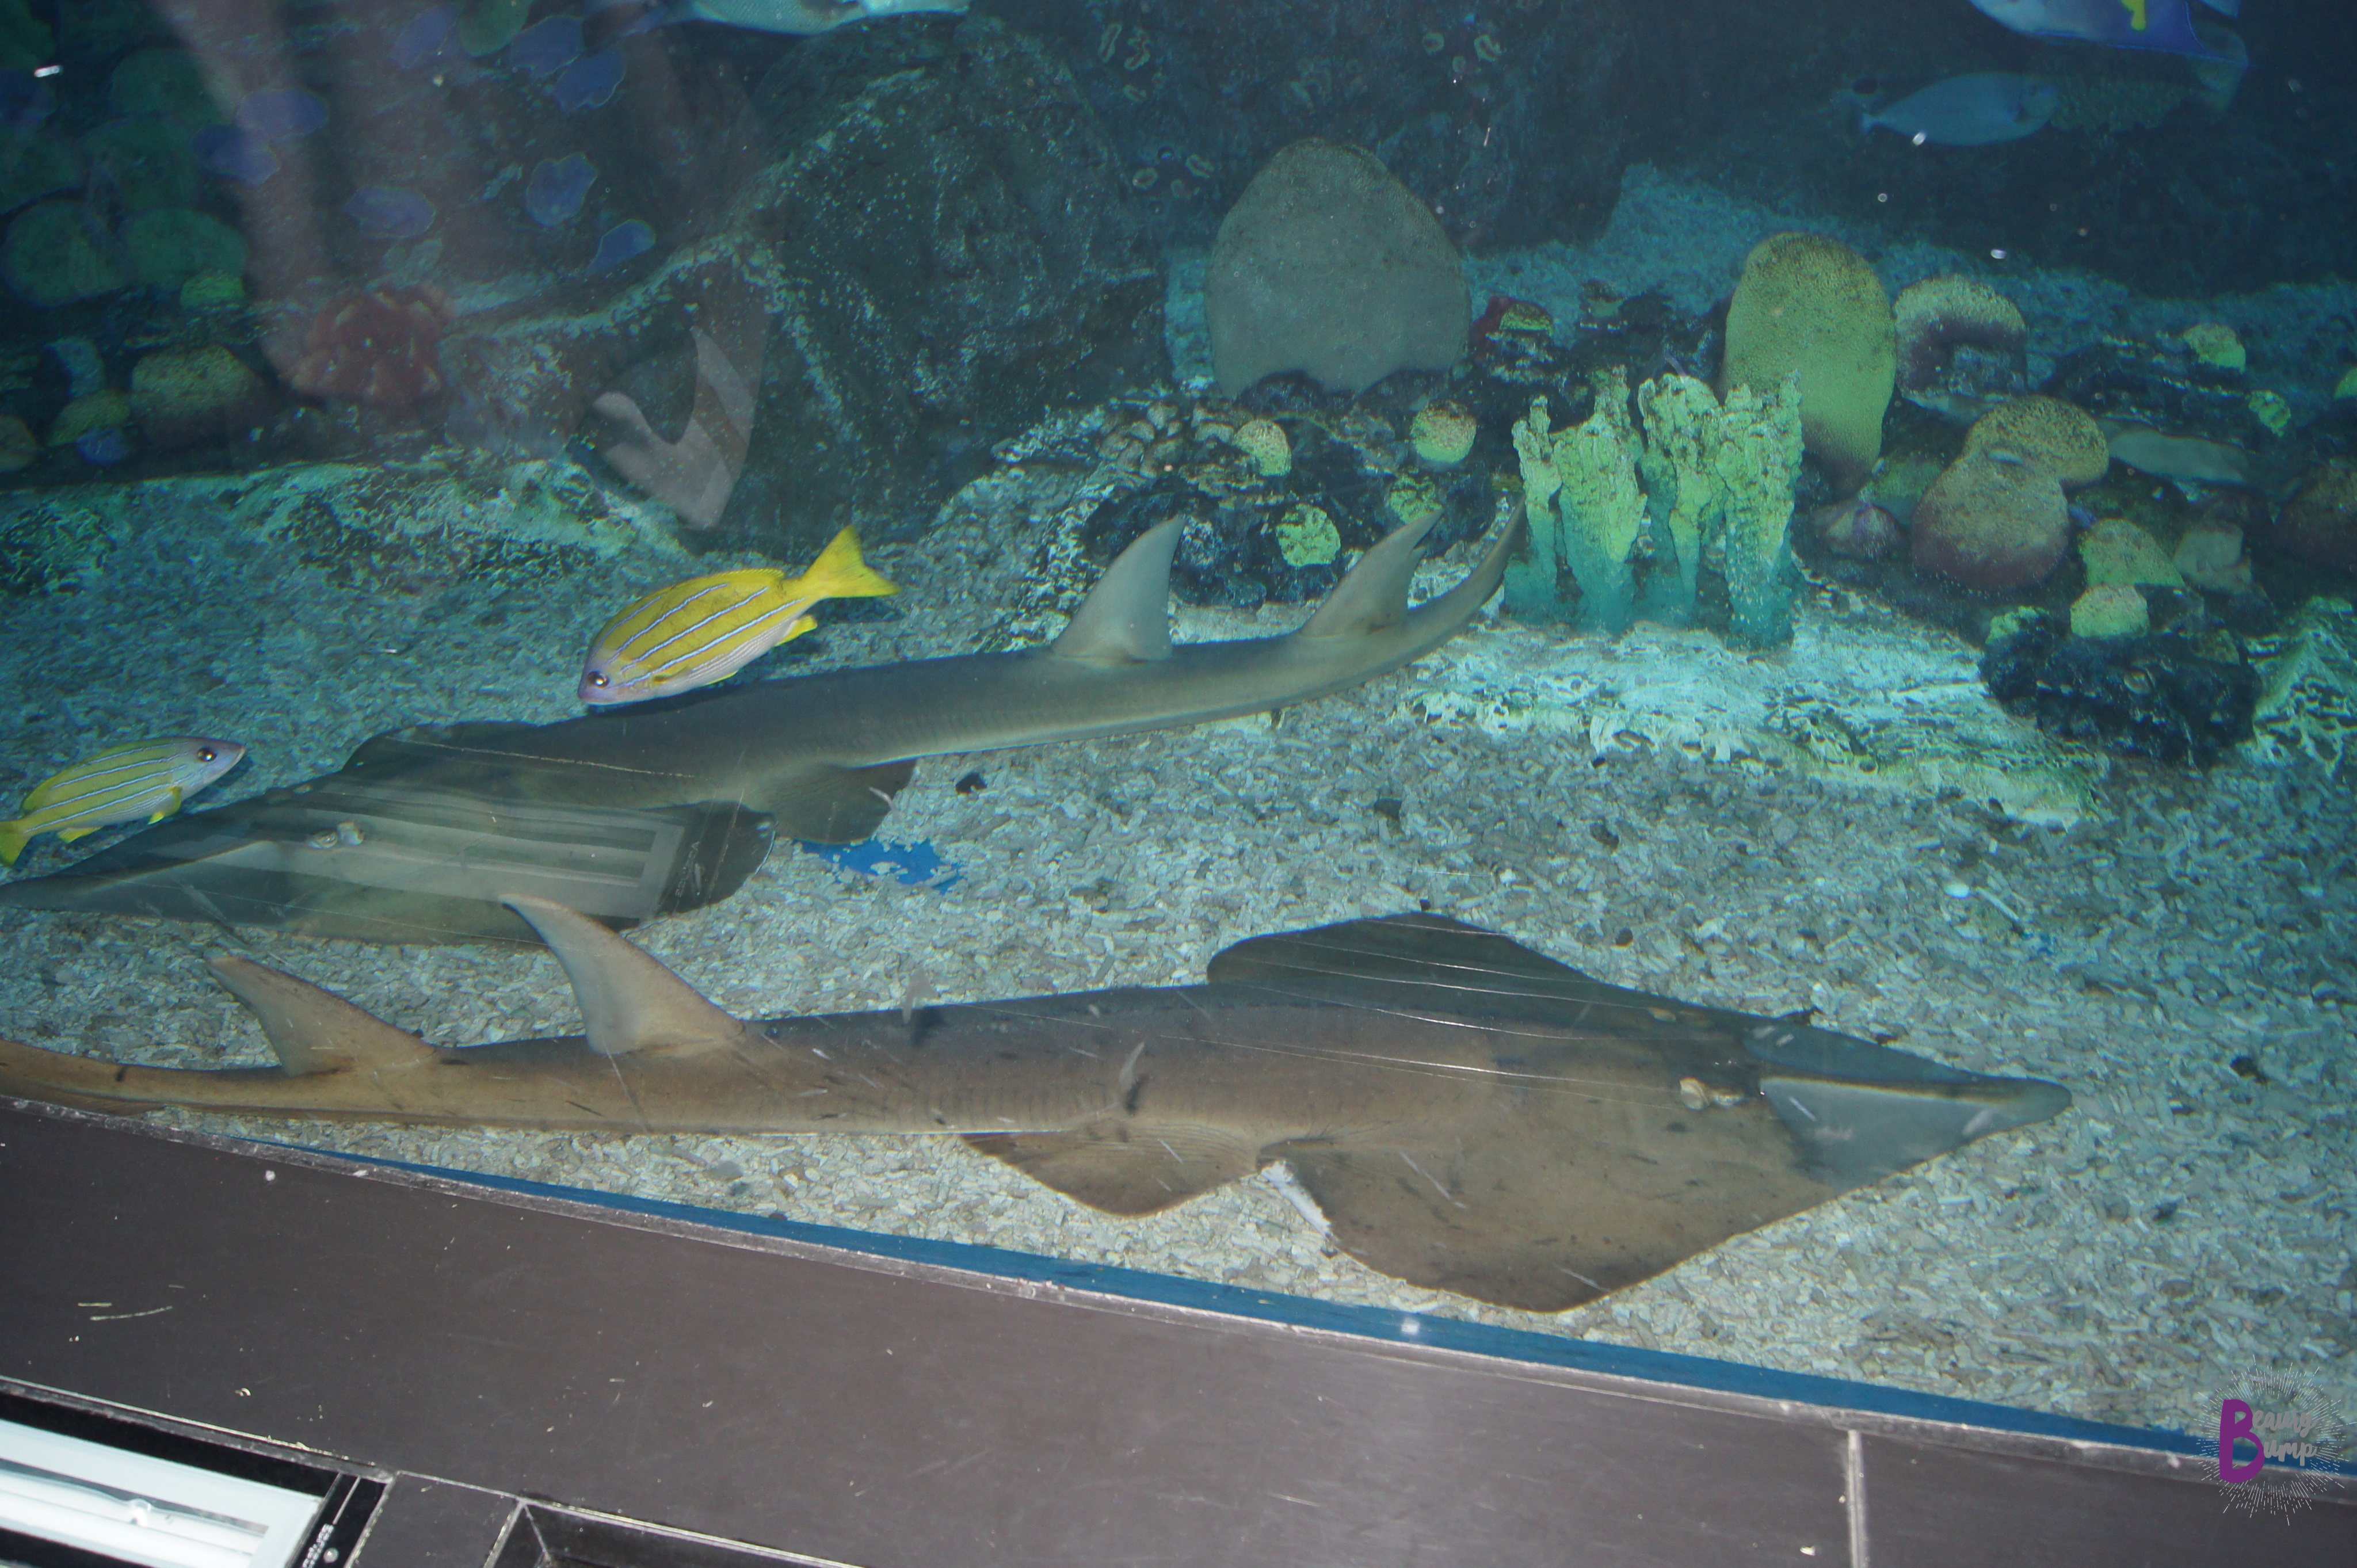 Top 5 Aquariums to Visit When Traveling - Dubai Aquarium